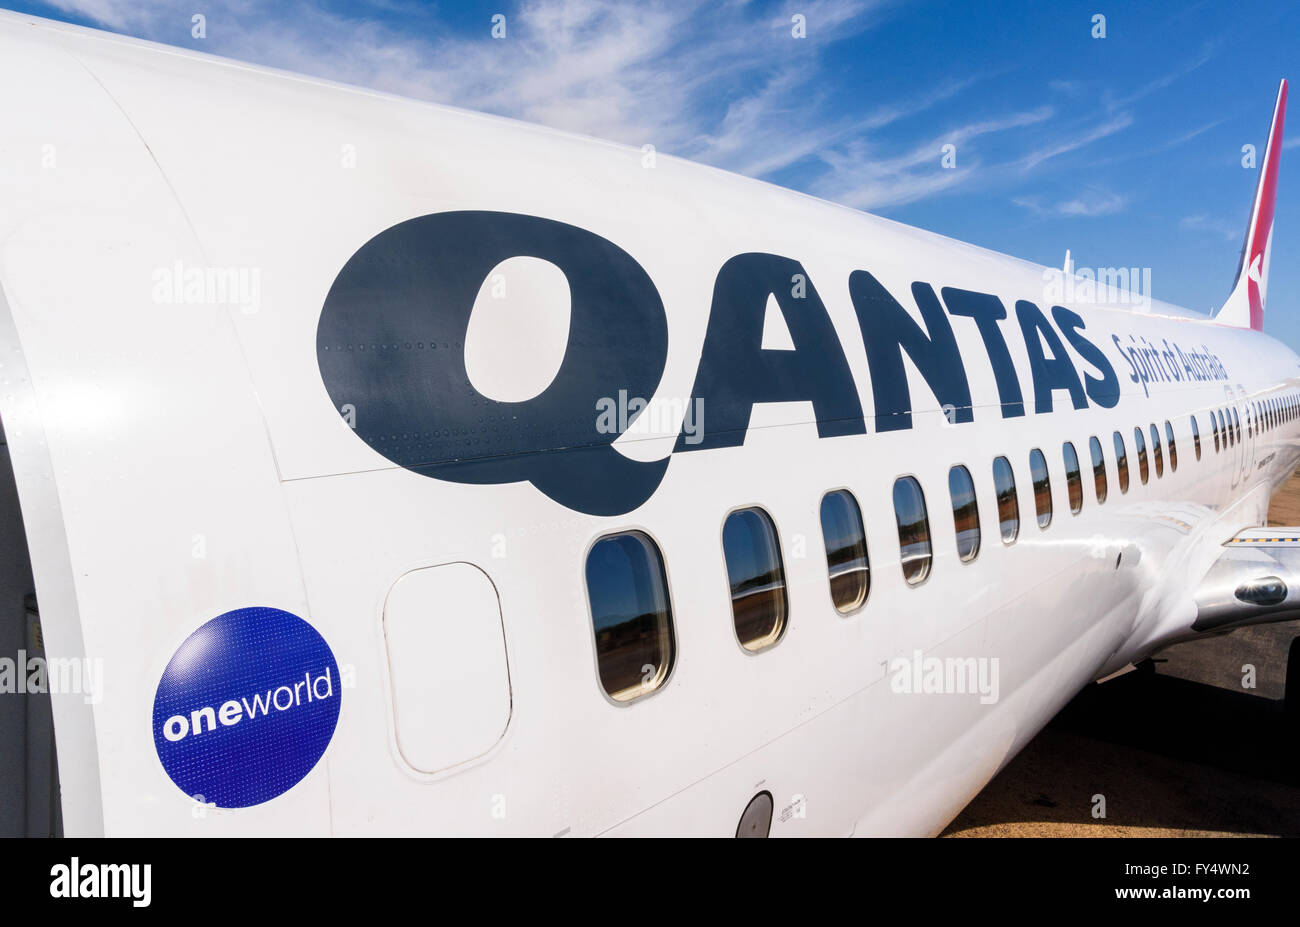 Scritta Qantas sulla fusoliera di un aereo Qantas Boeing 737-800 presso l'aeroporto di Broome, Kimberley, Australia Occidentale Foto Stock